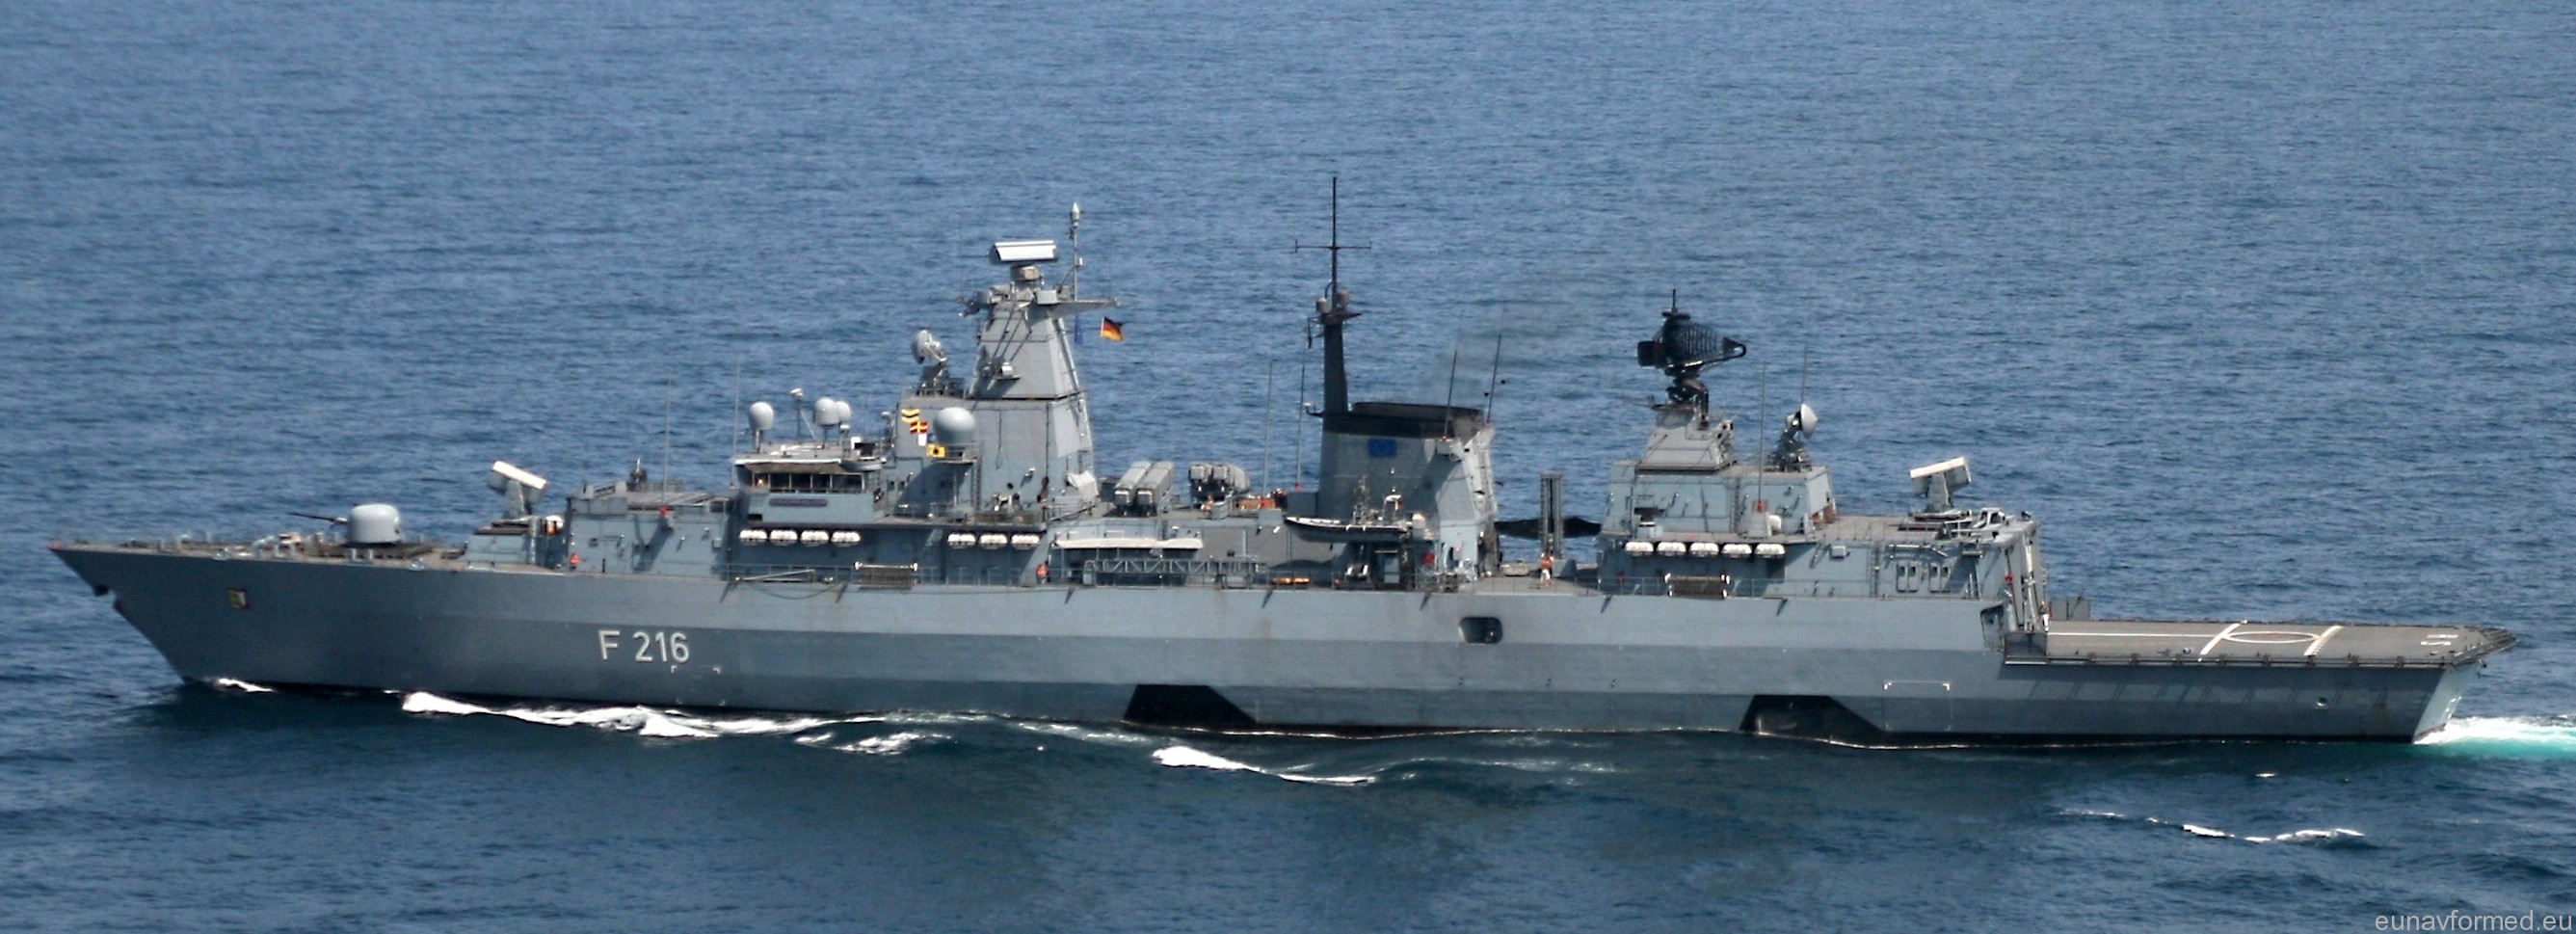 f-216 fgs schleswig holstein type 123 brandenburg class frigate german navy 39 eunavformed